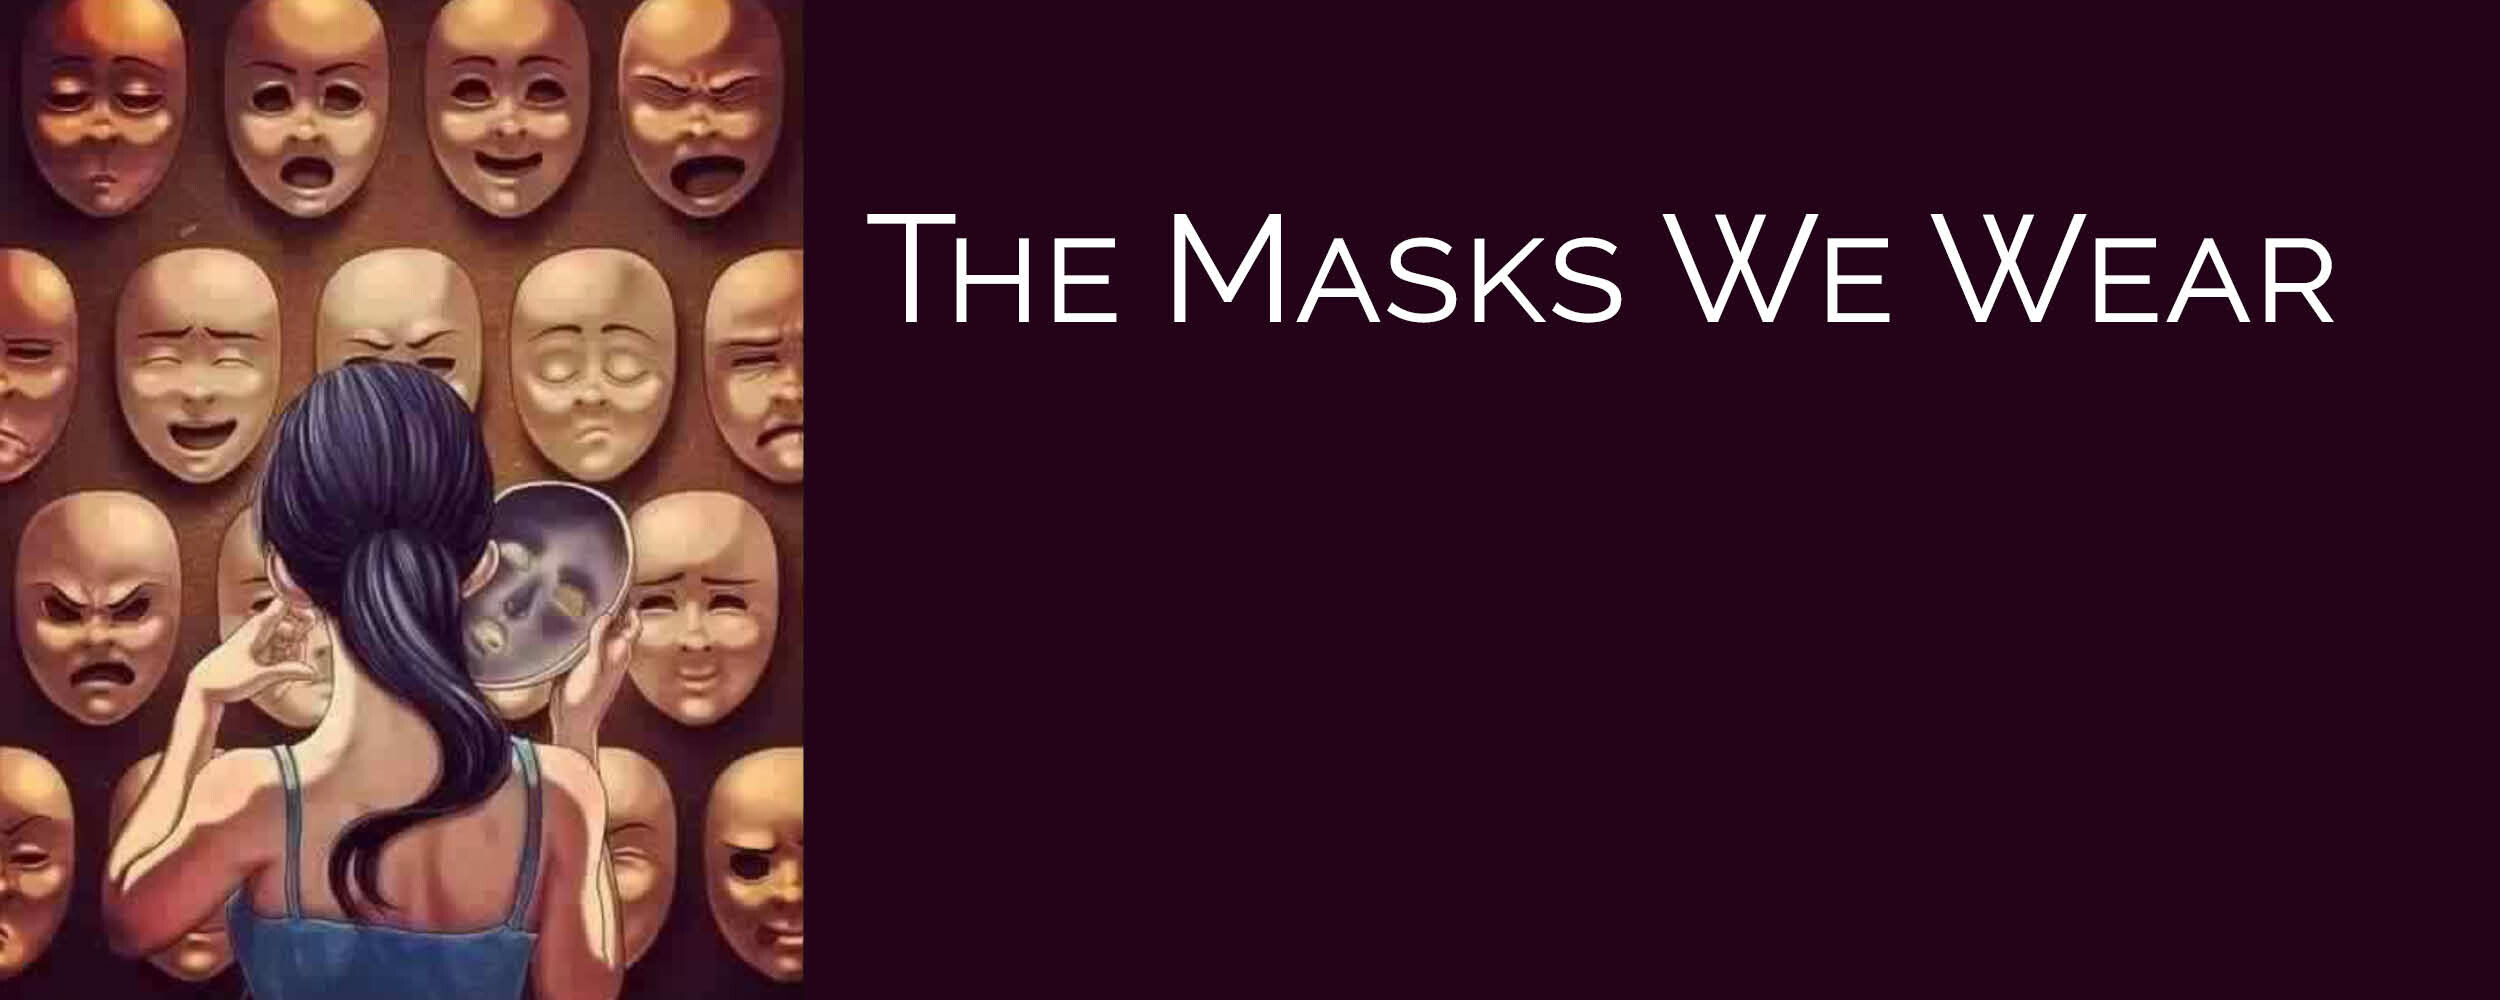 The Masks We Wear, Children's Message